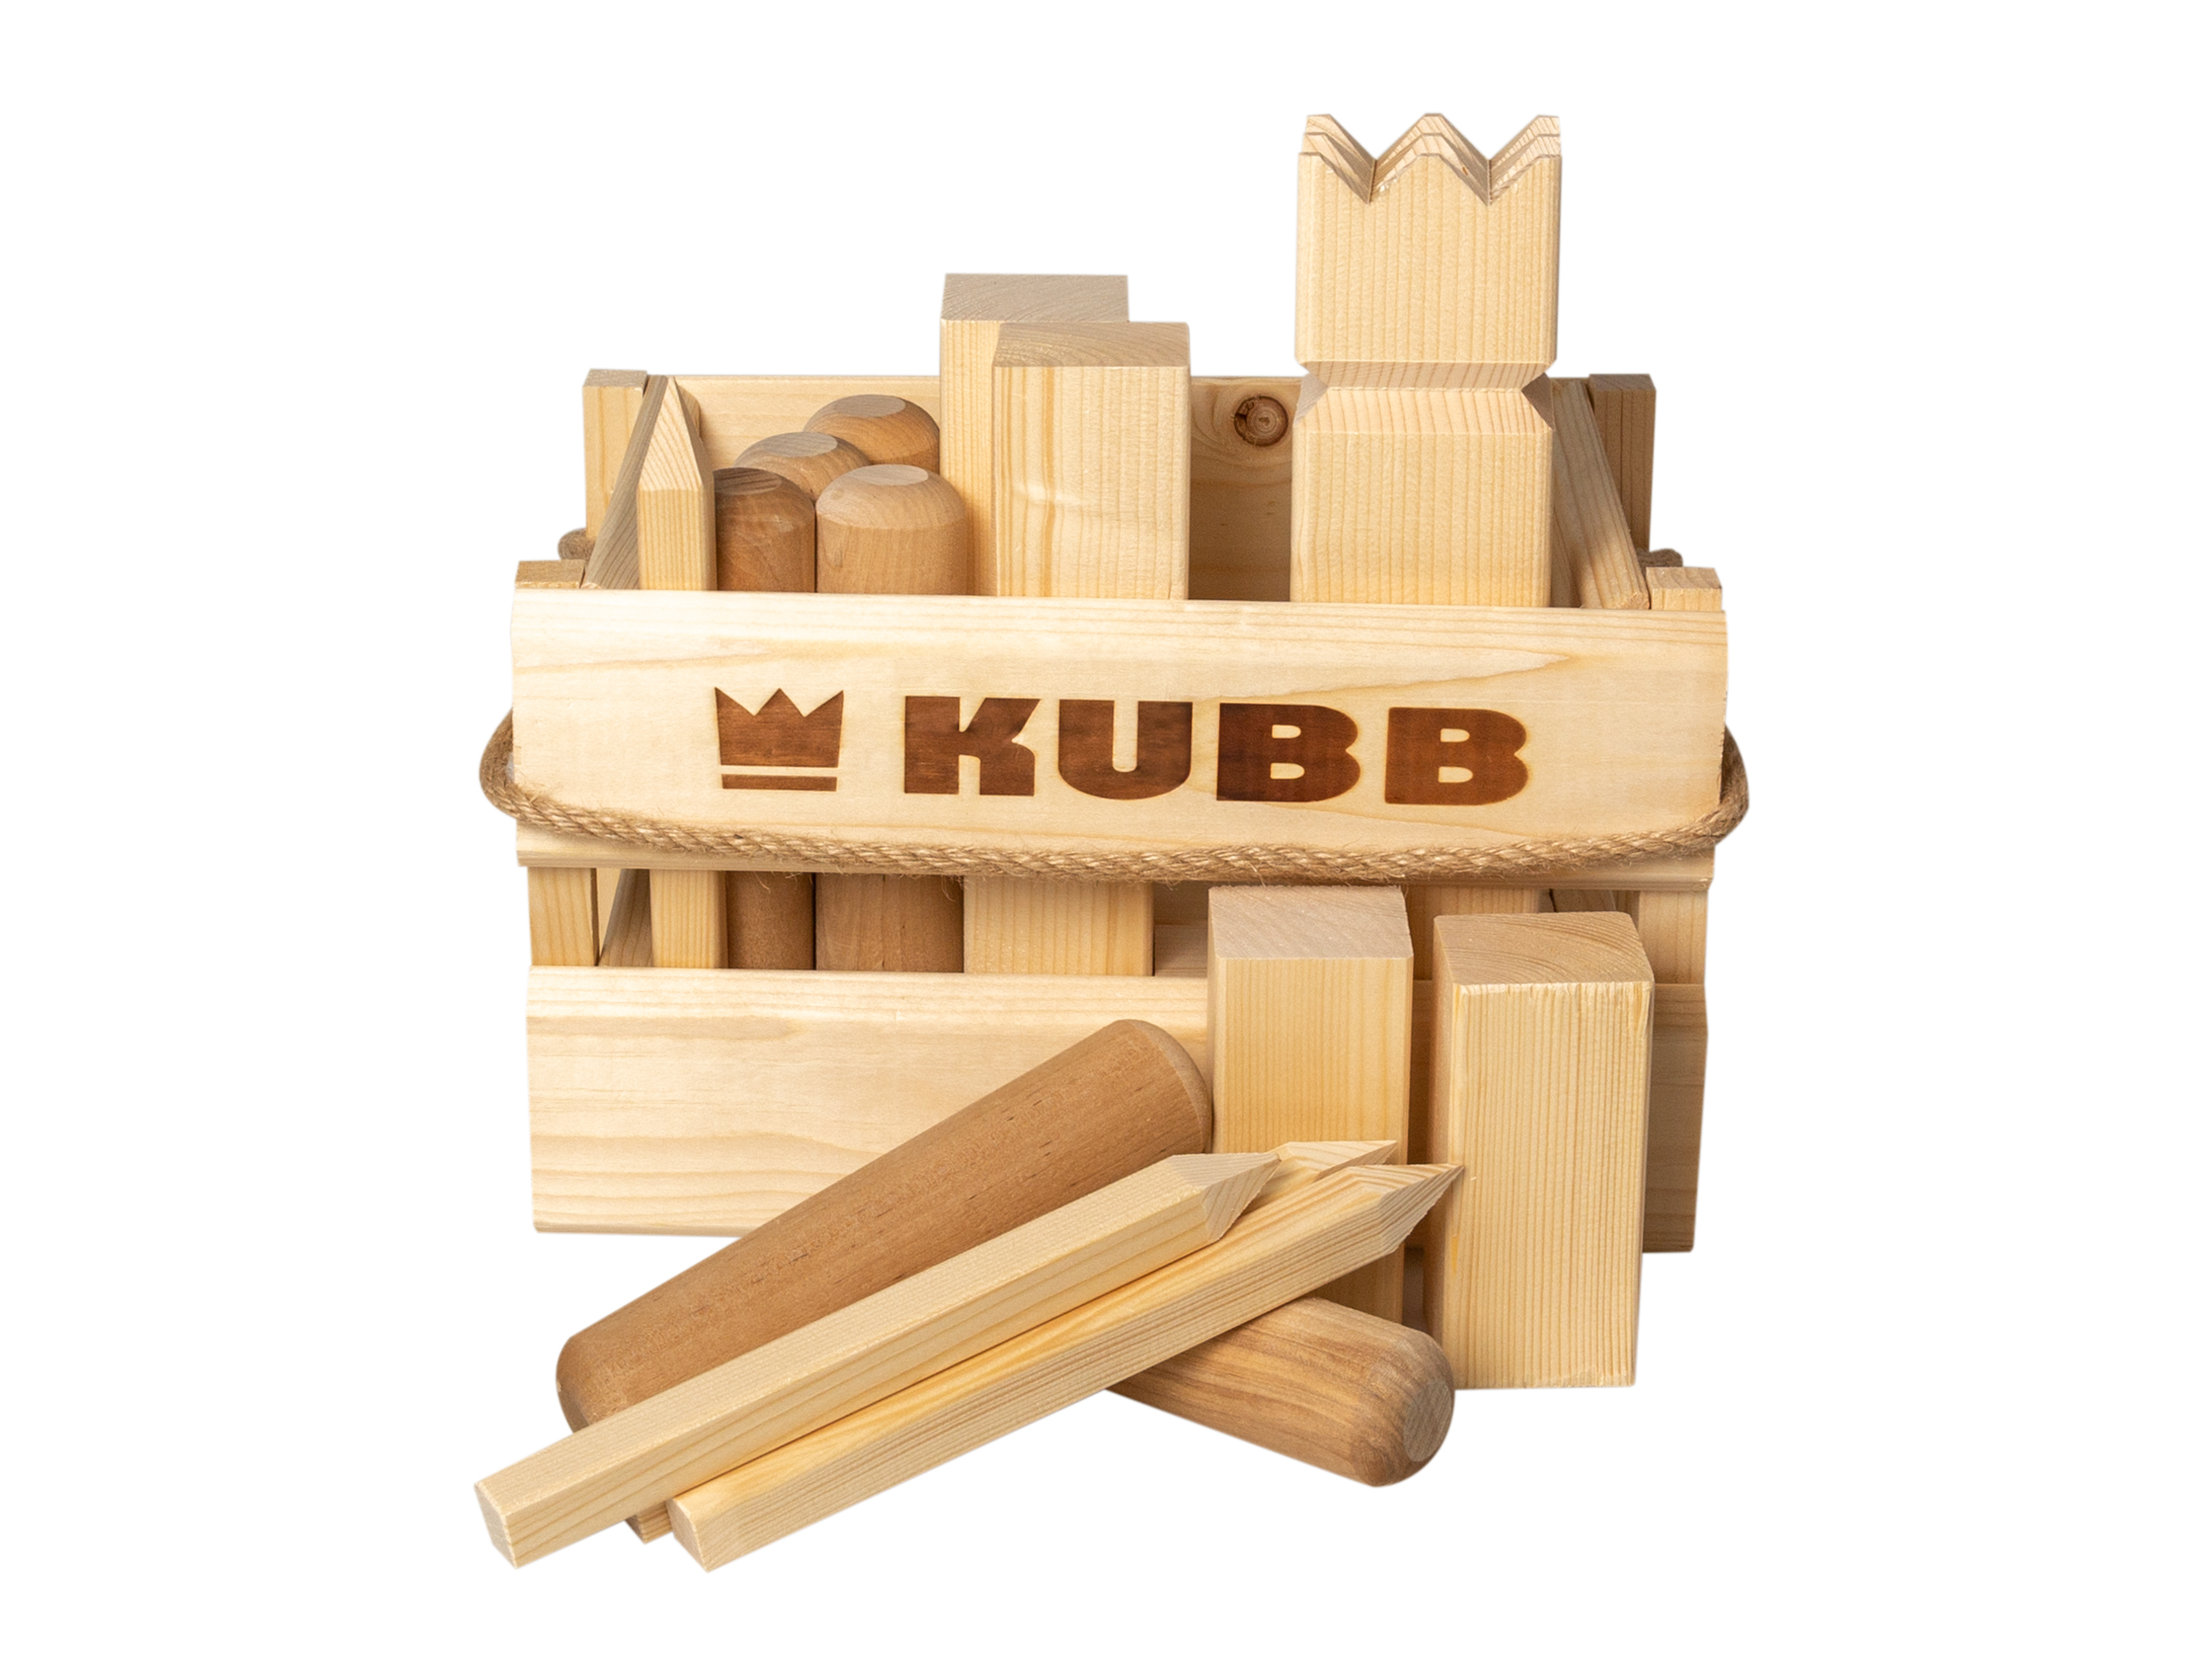 Tactic - Kubb in wodden box (56388)